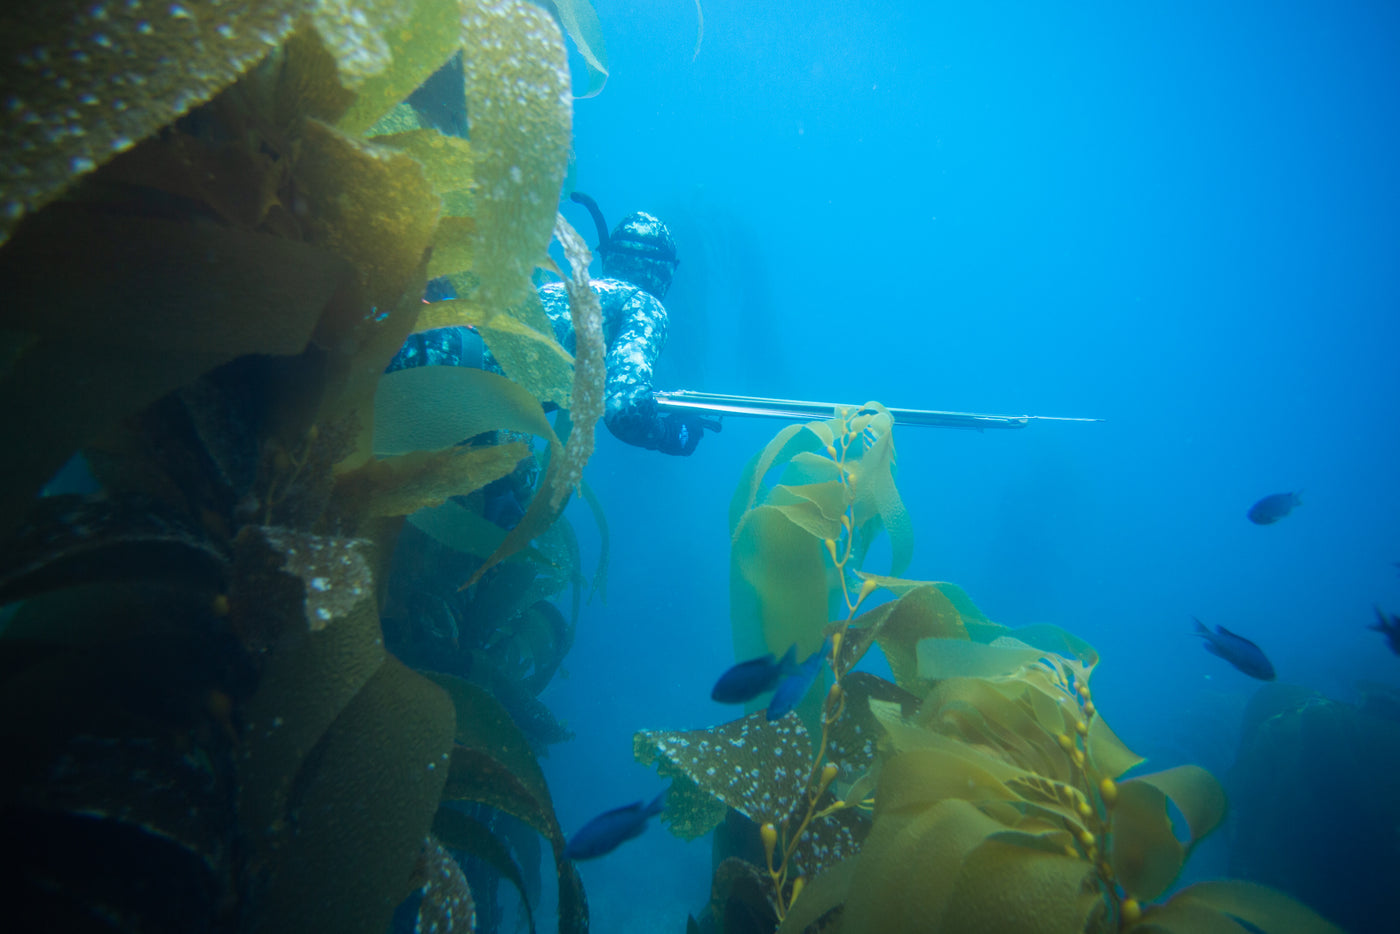 3D Reef Green Camo Wetsuit underwater hunt